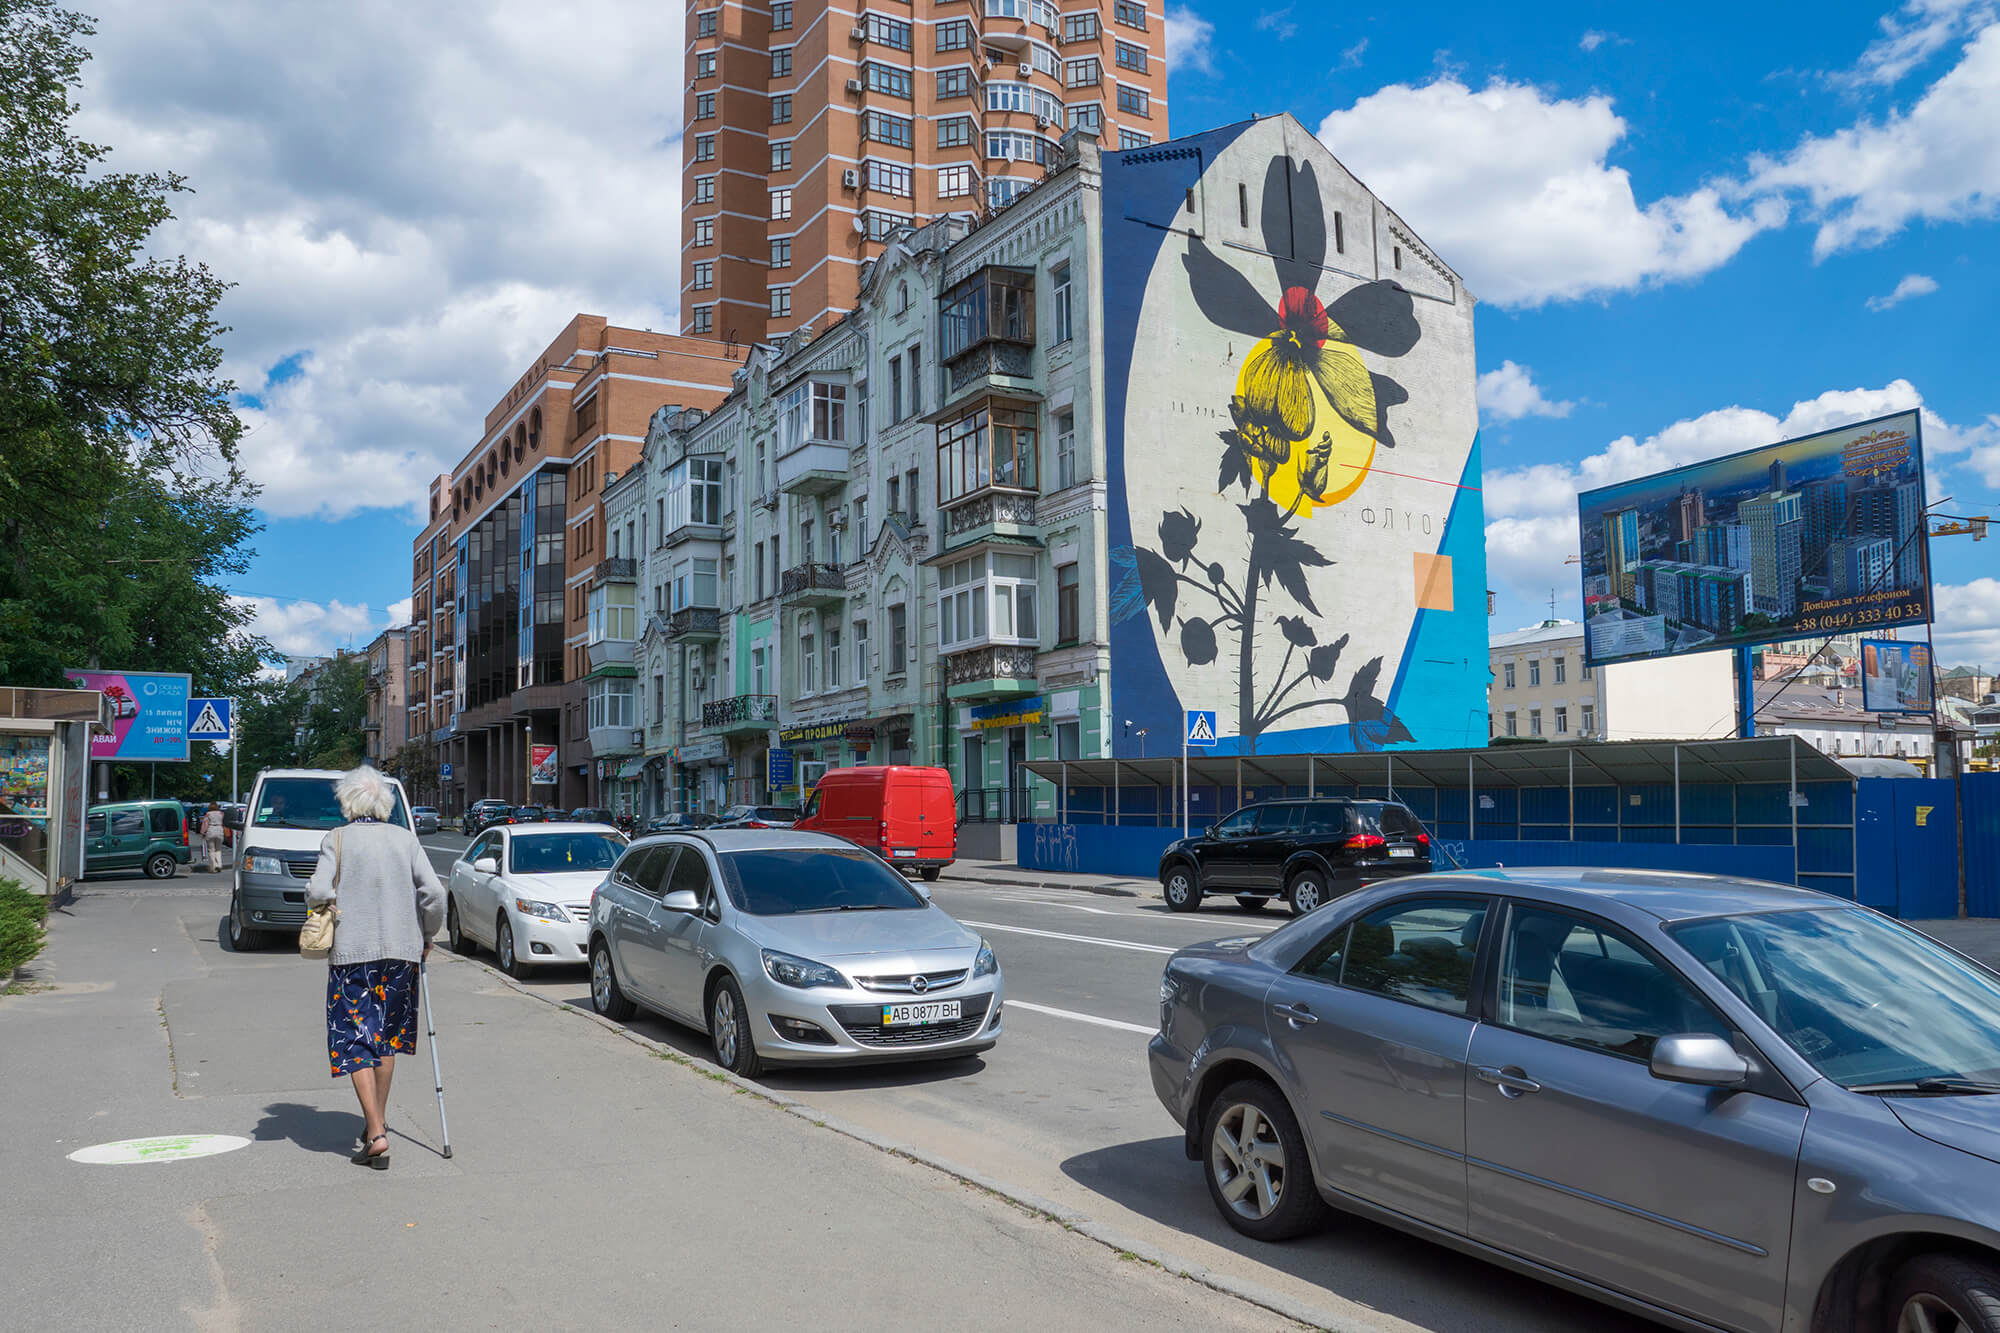 Italian Street Artist Fabio Petani paints for Art United Us, Kiev 2017